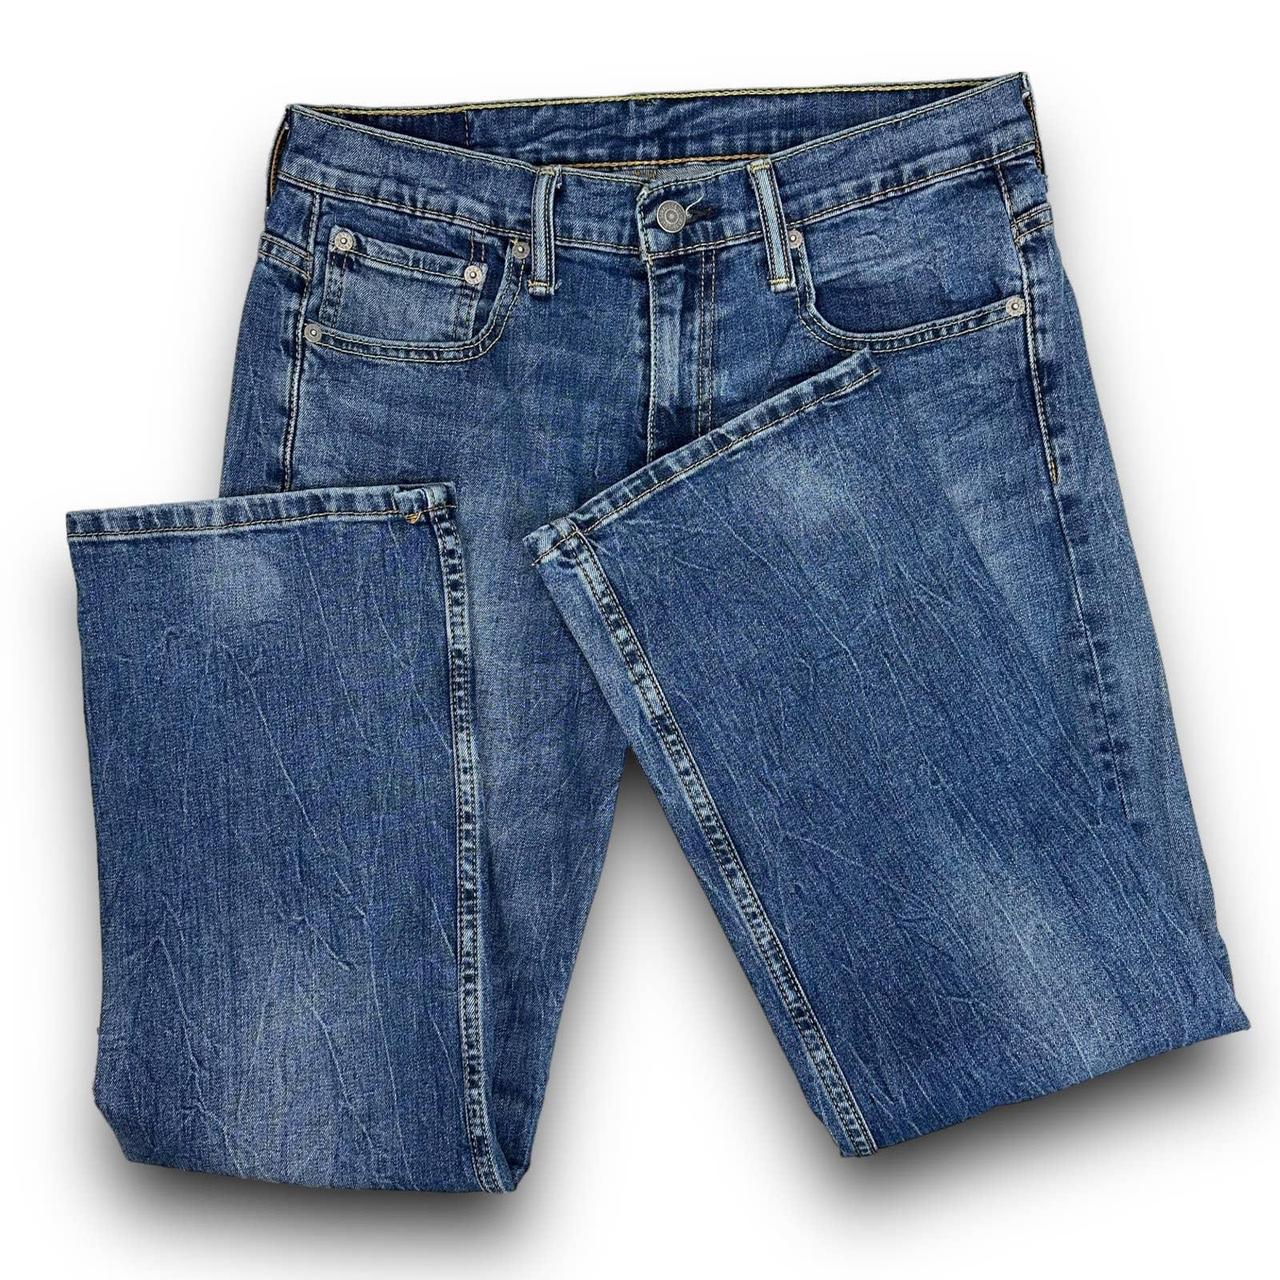 Louis Vuitton Jeans Indigo Blue Denim Jeans Size 30 - Depop